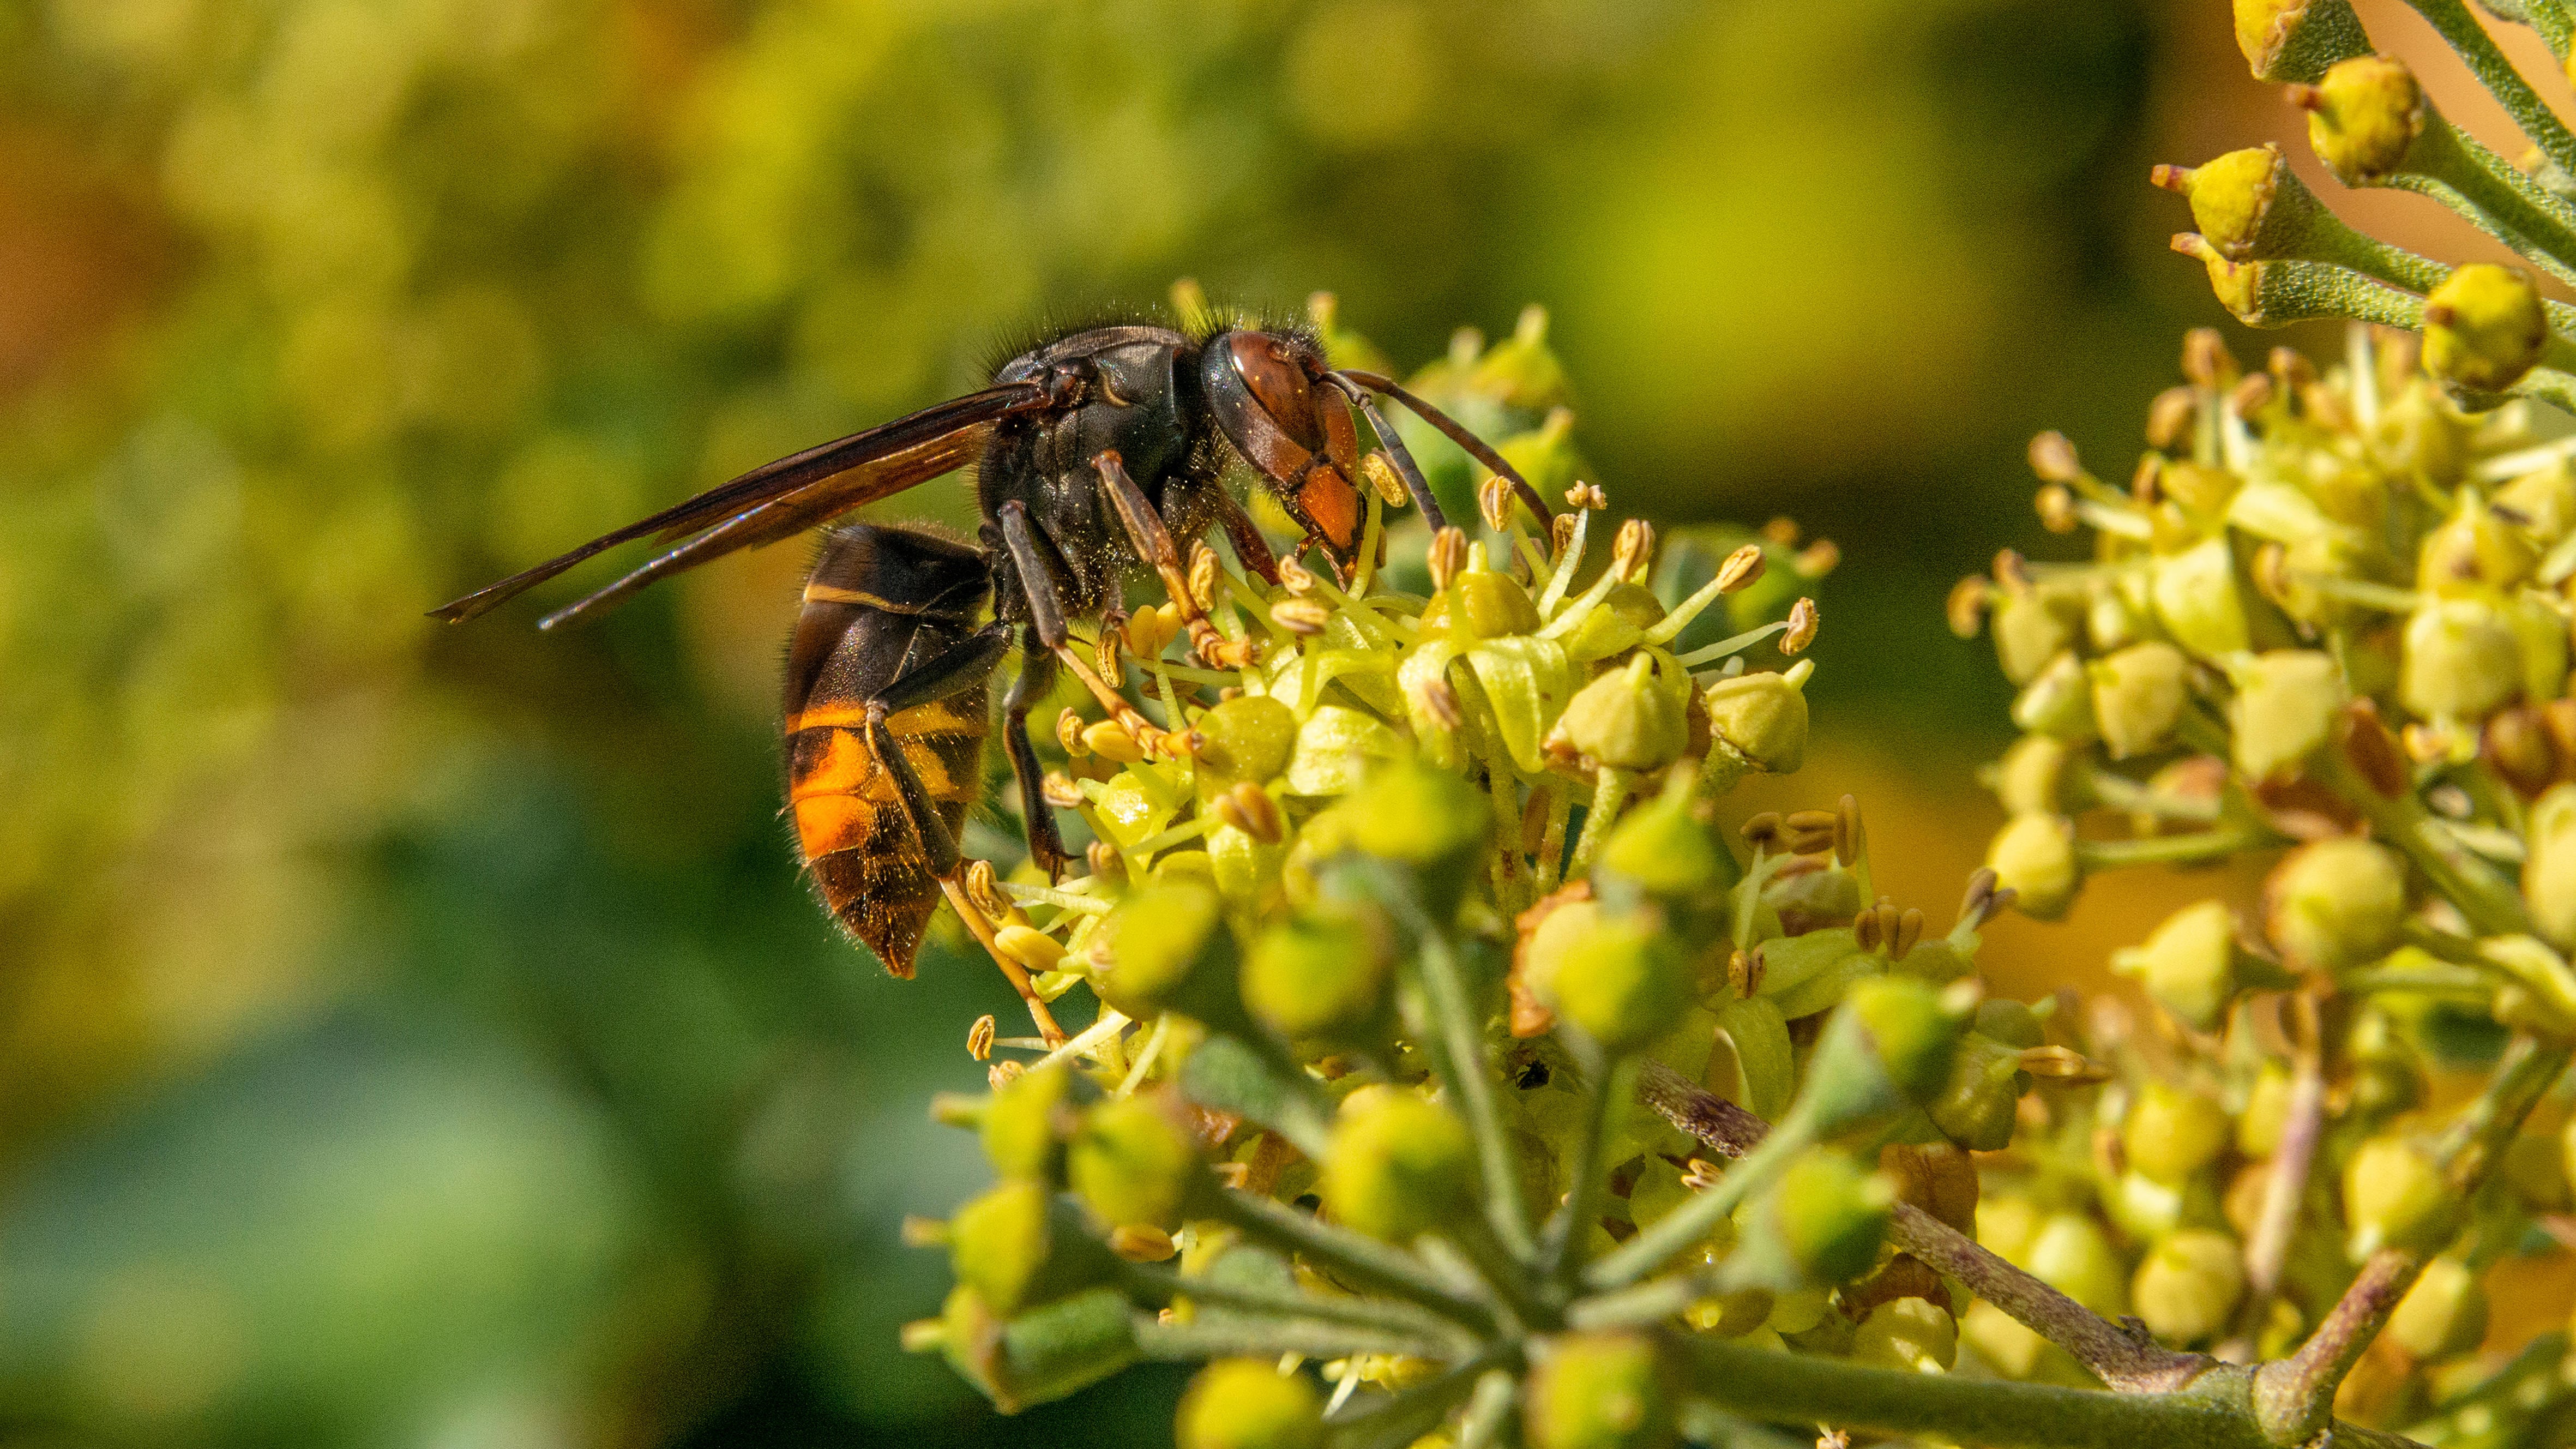 An Asian hornet taking nectar from an Ivy flower head